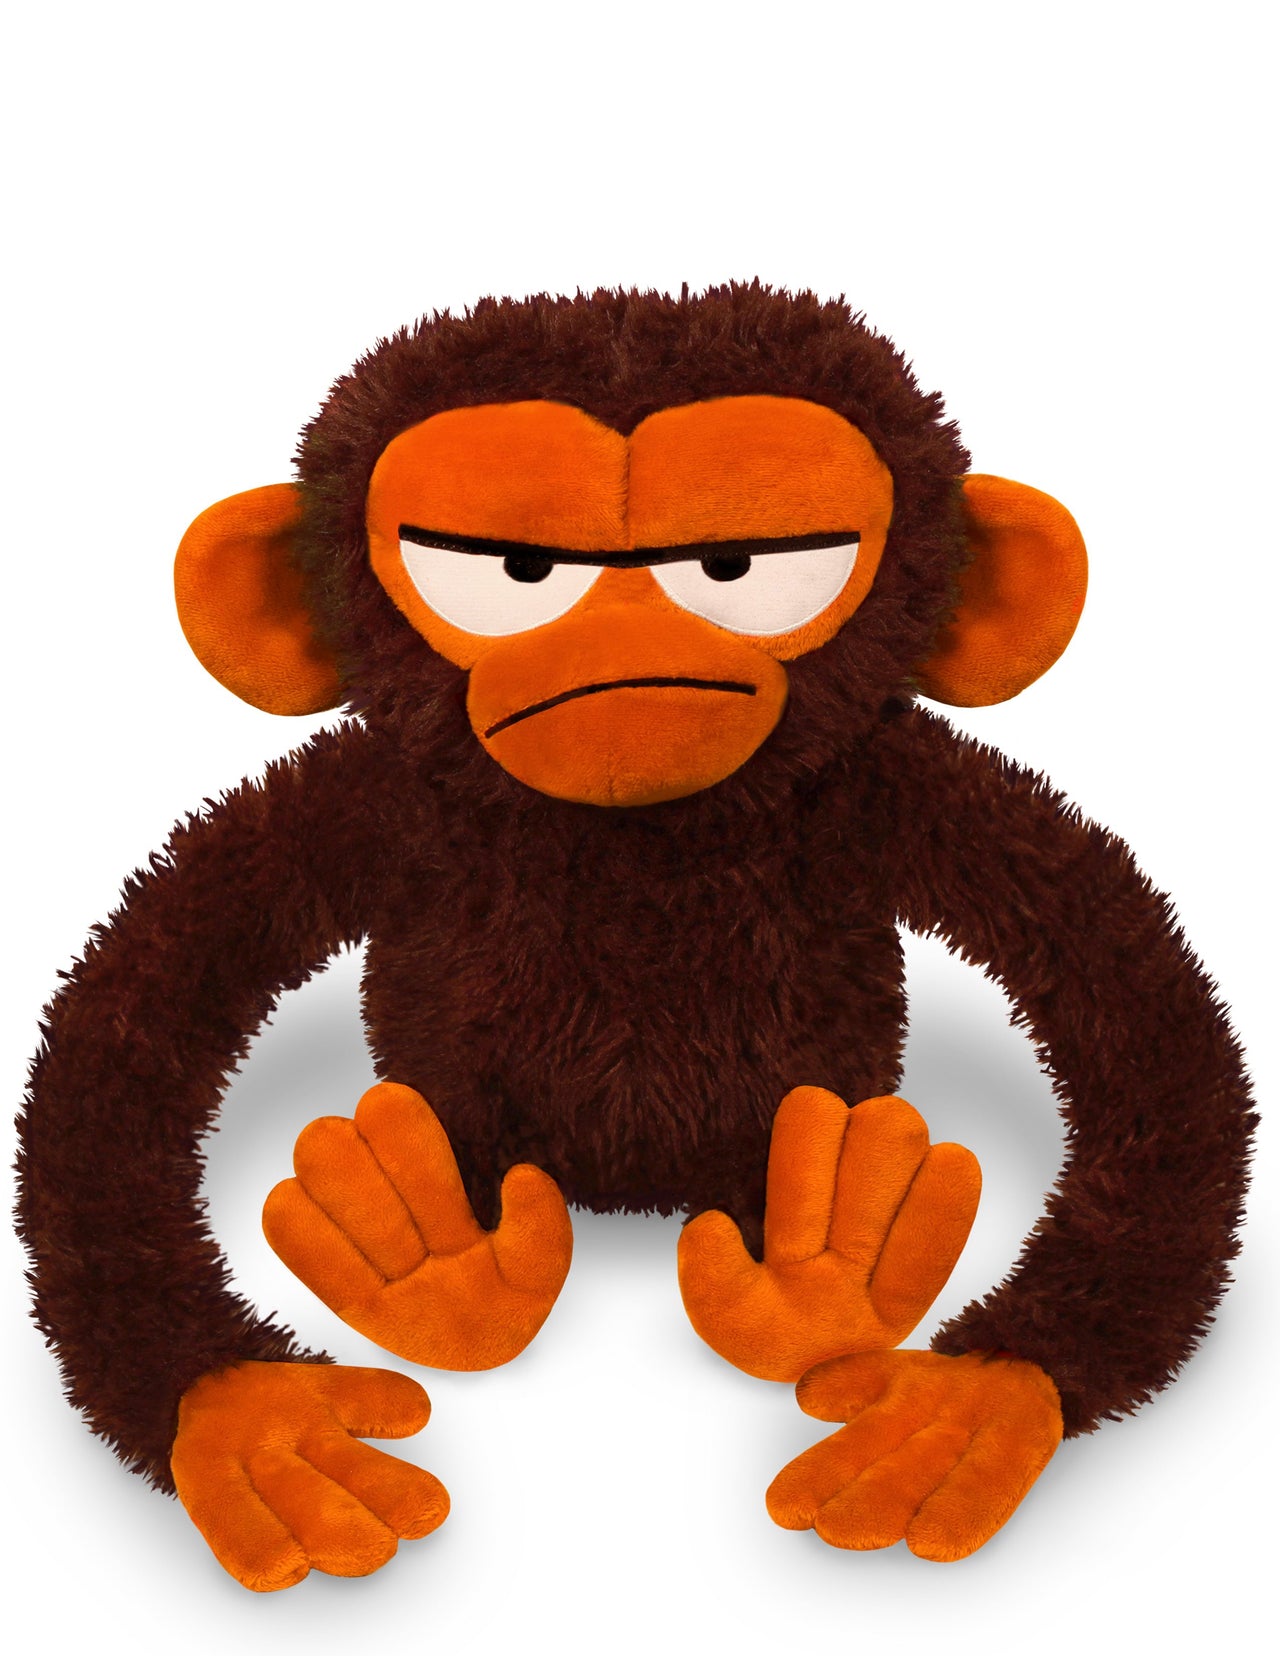 Yottoy Grumpy Monkey 12" Soft Toy